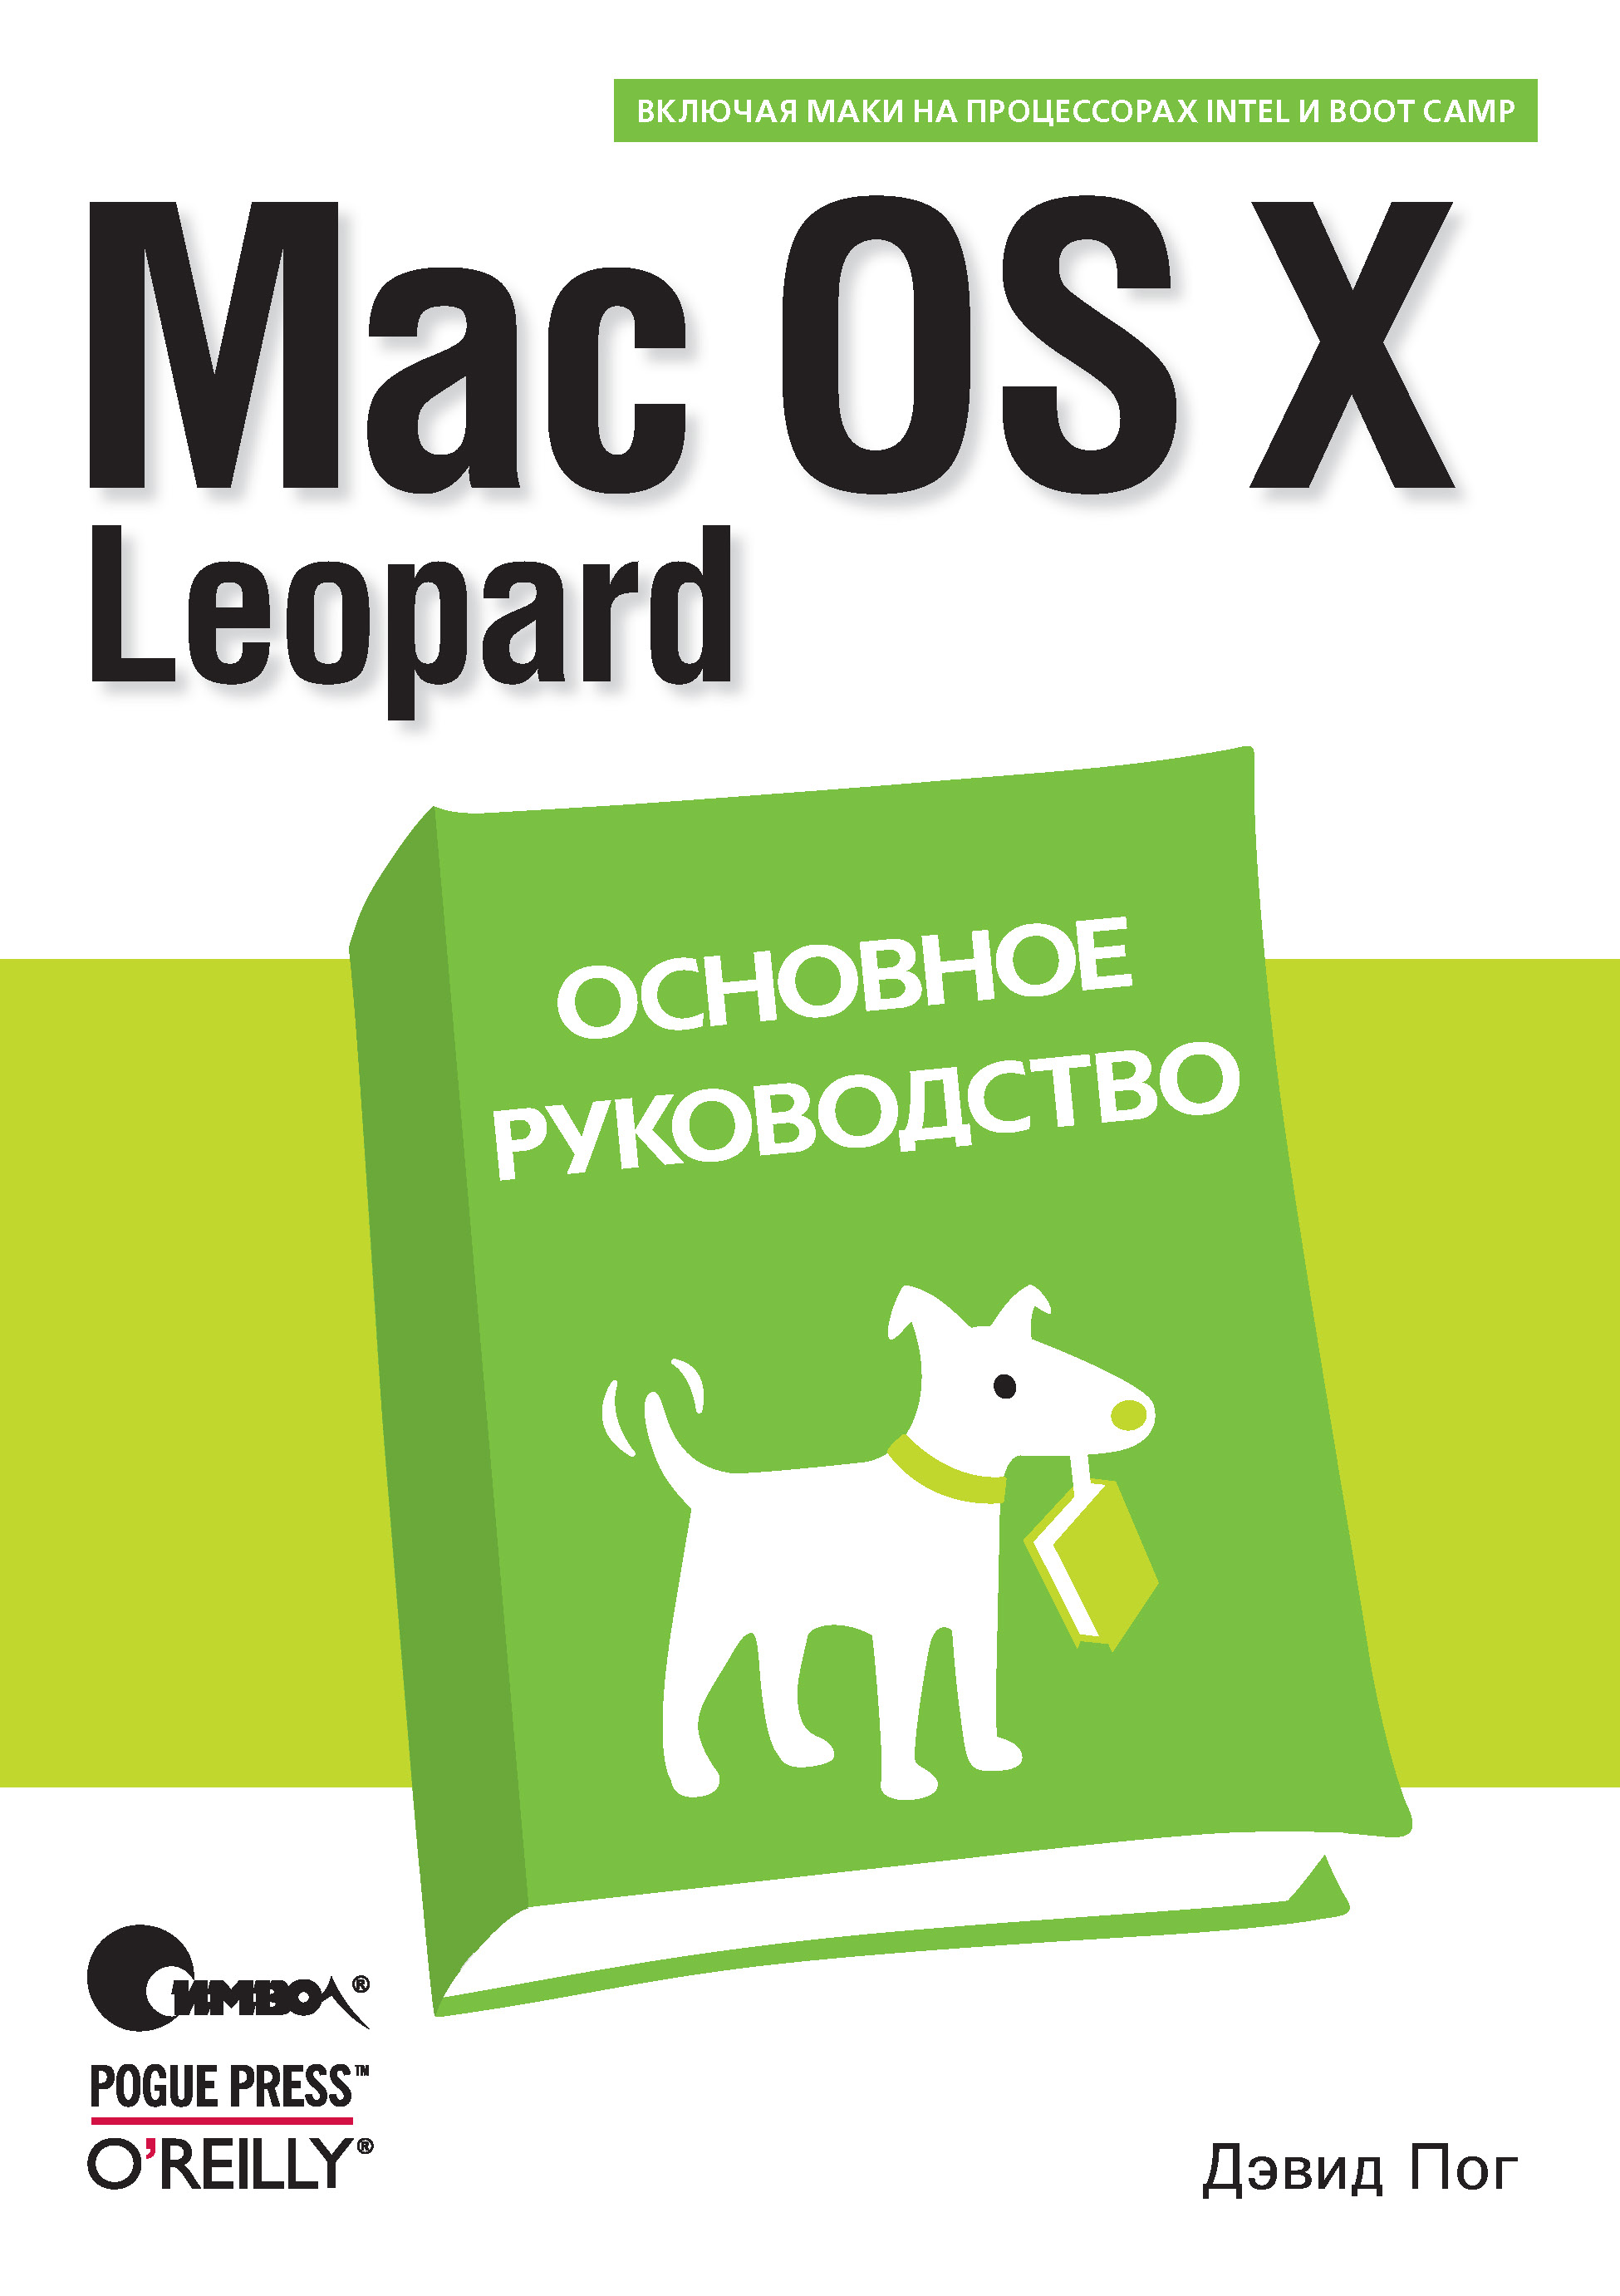 Книга  Mac OS X Leopard. Основное руководство созданная Дэвид Пог, С. Маккавеев может относится к жанру зарубежная компьютерная литература, книги о компьютерах, компьютерная справочная литература, программирование. Стоимость электронной книги Mac OS X Leopard. Основное руководство с идентификатором 24499502 составляет 150.00 руб.